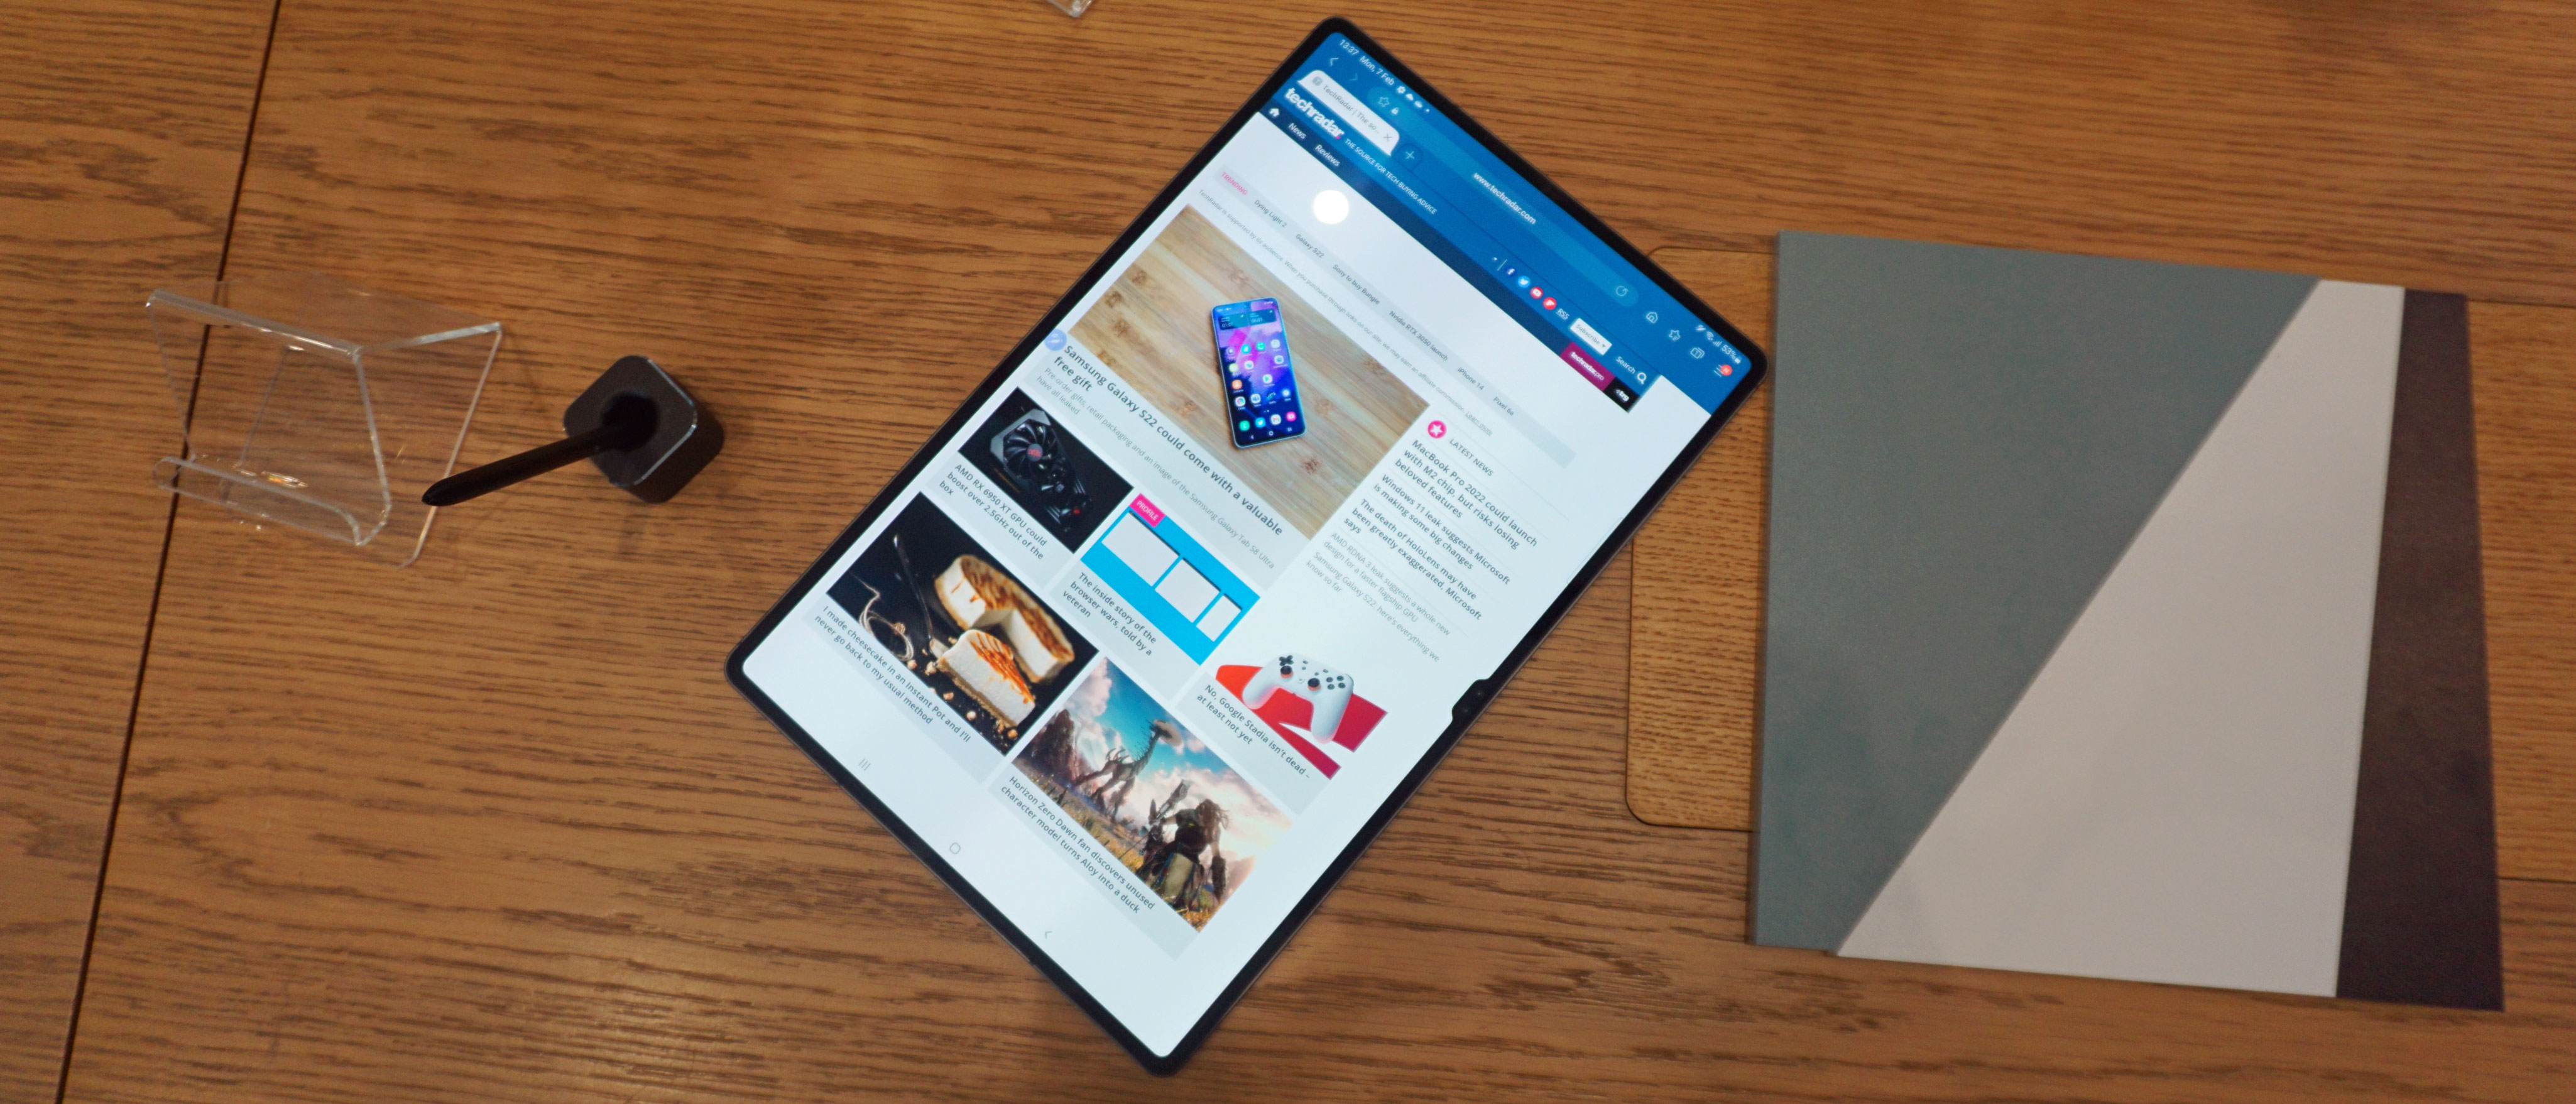 Samsung Galaxy Tab S8 Ultra - Full tablet specifications